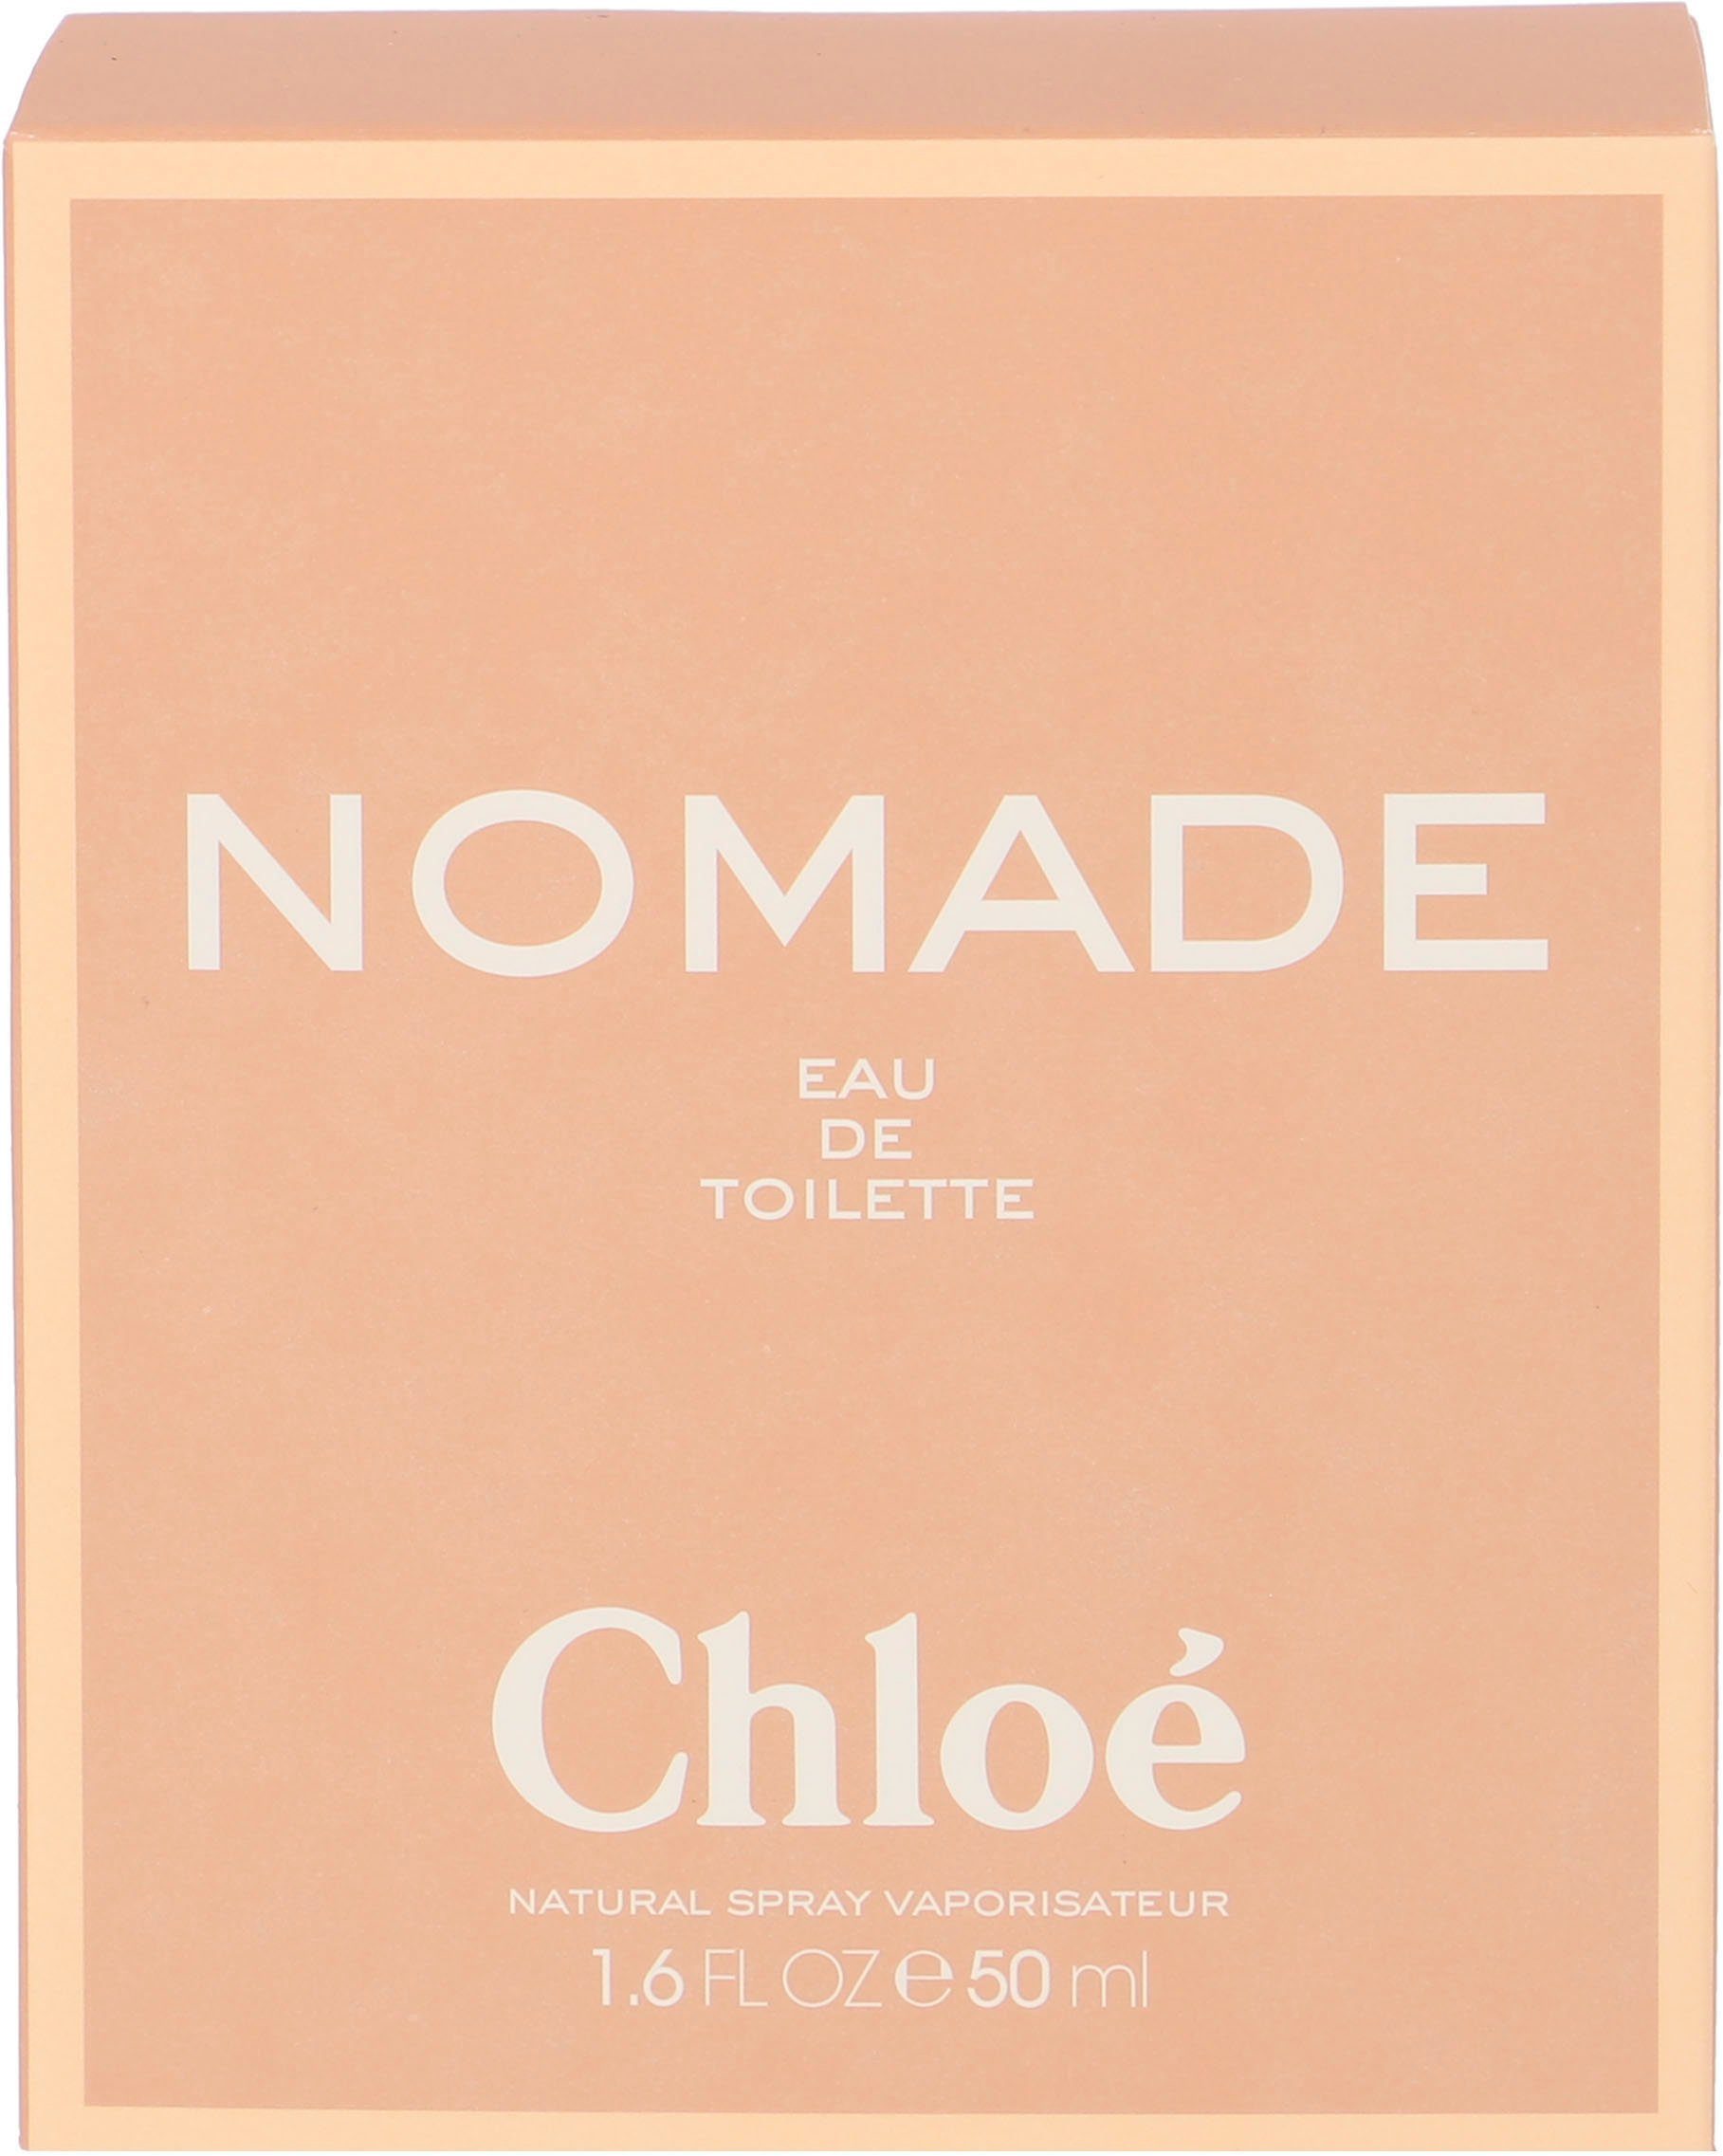 Chloé Eau de Nomade Toilette